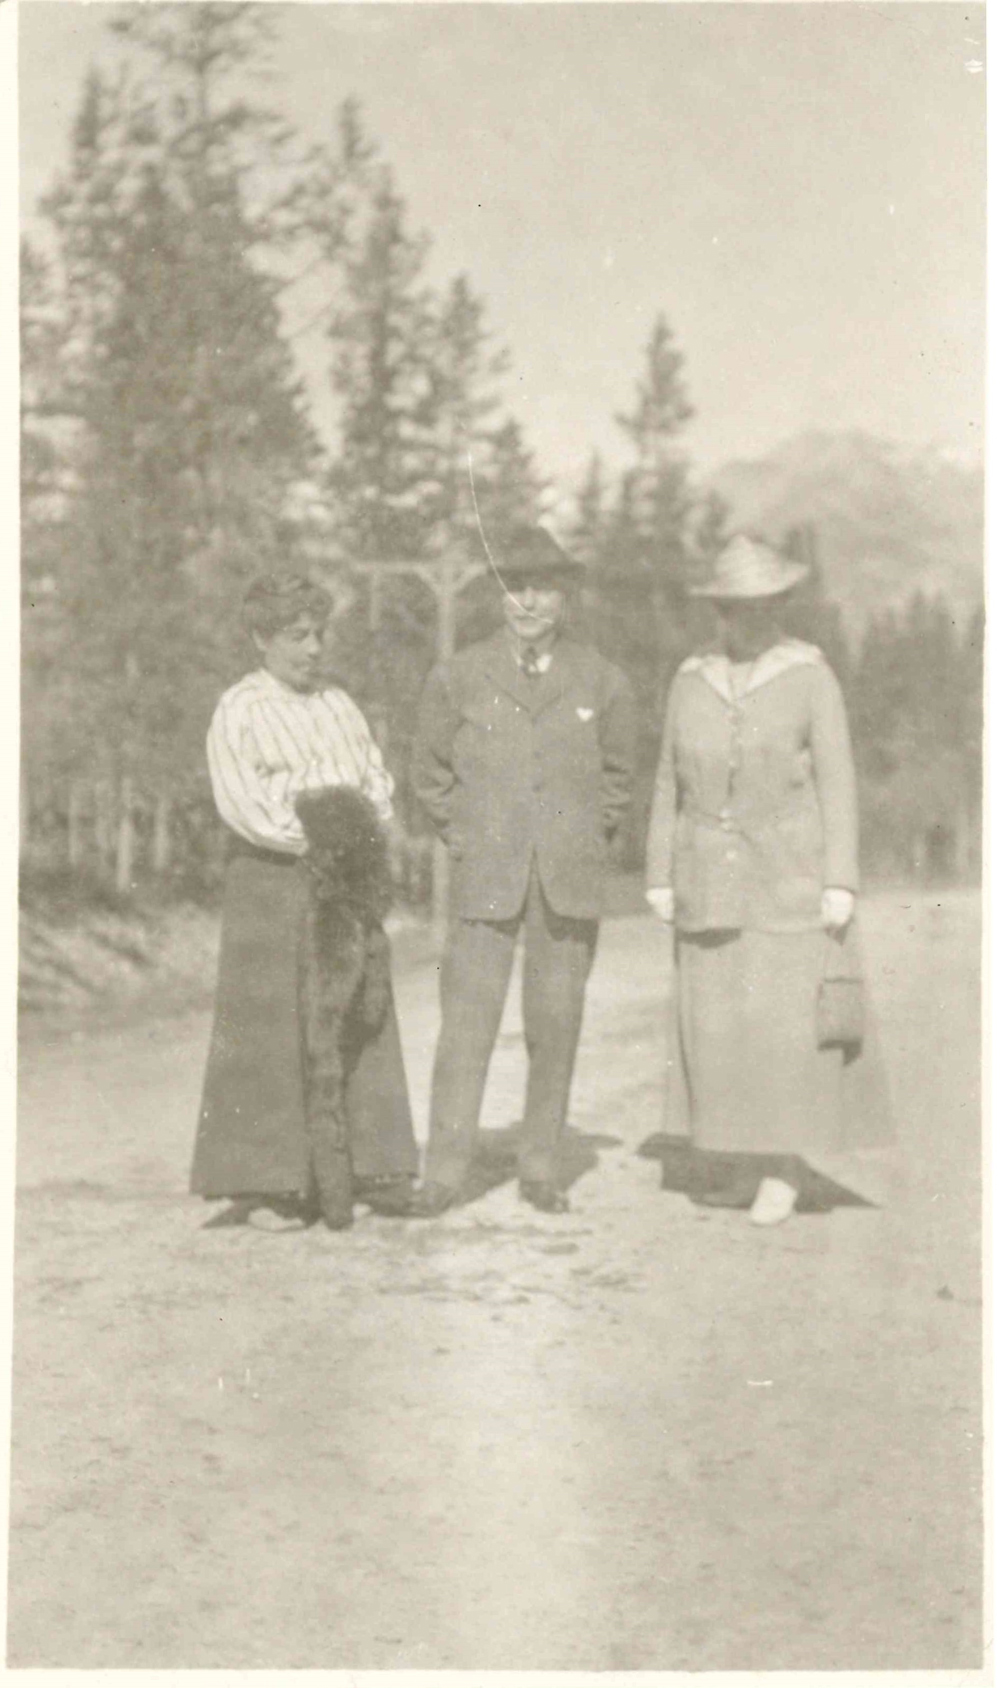 Photo of Belle (left), James (centre), and Miss Merritt (right) taken at Banff